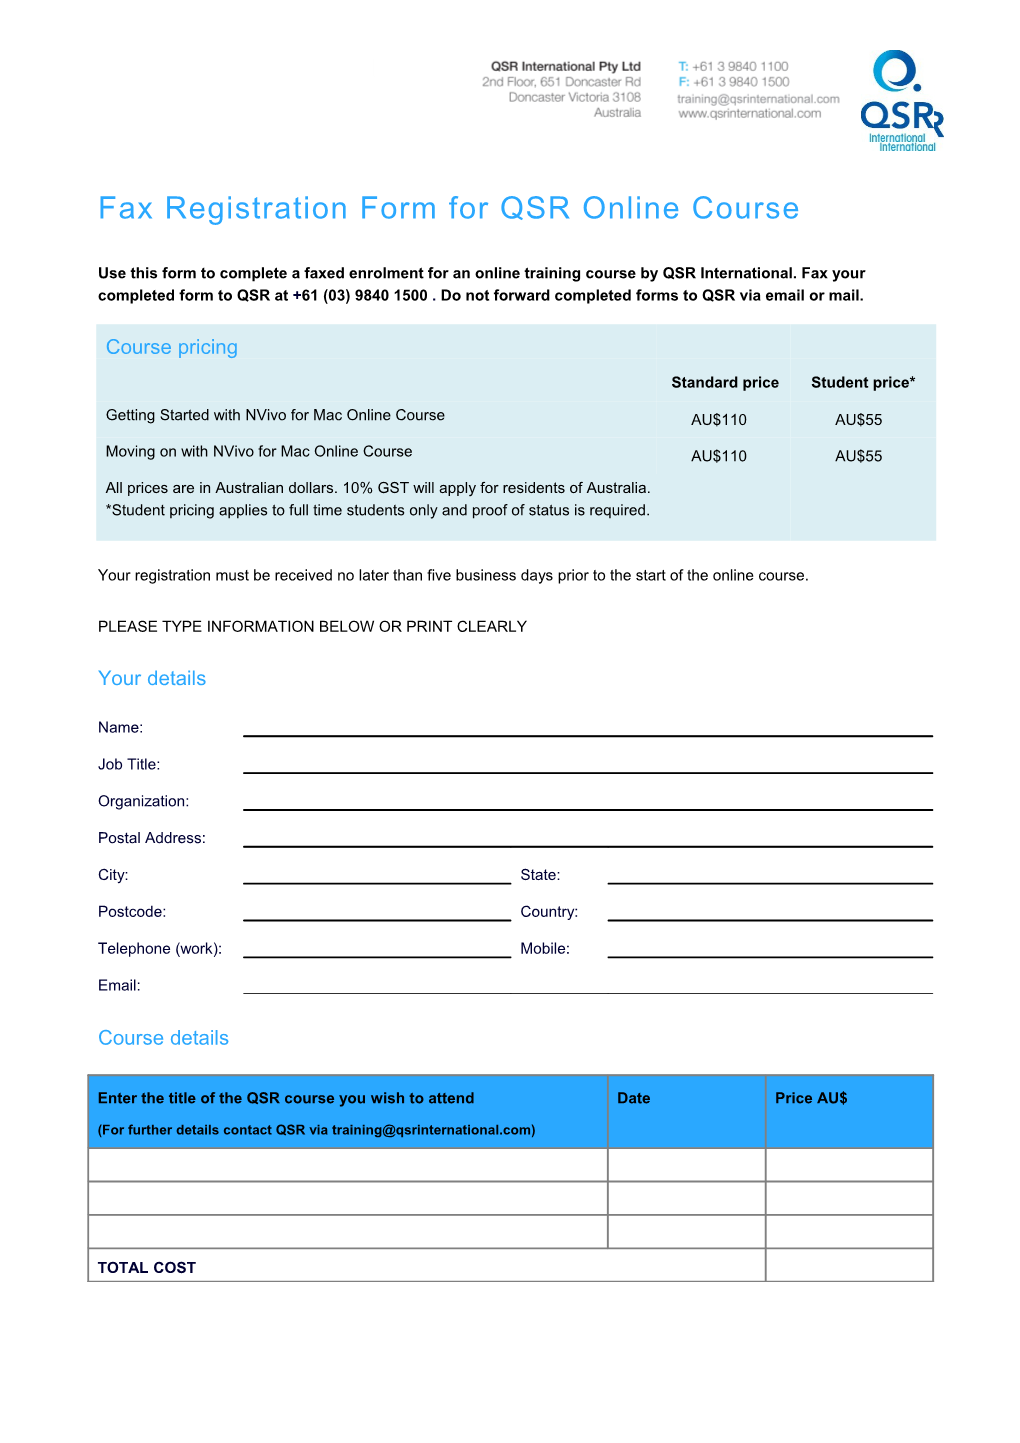 Fax Enrolment Form for QSR Eworkshop (AUS)